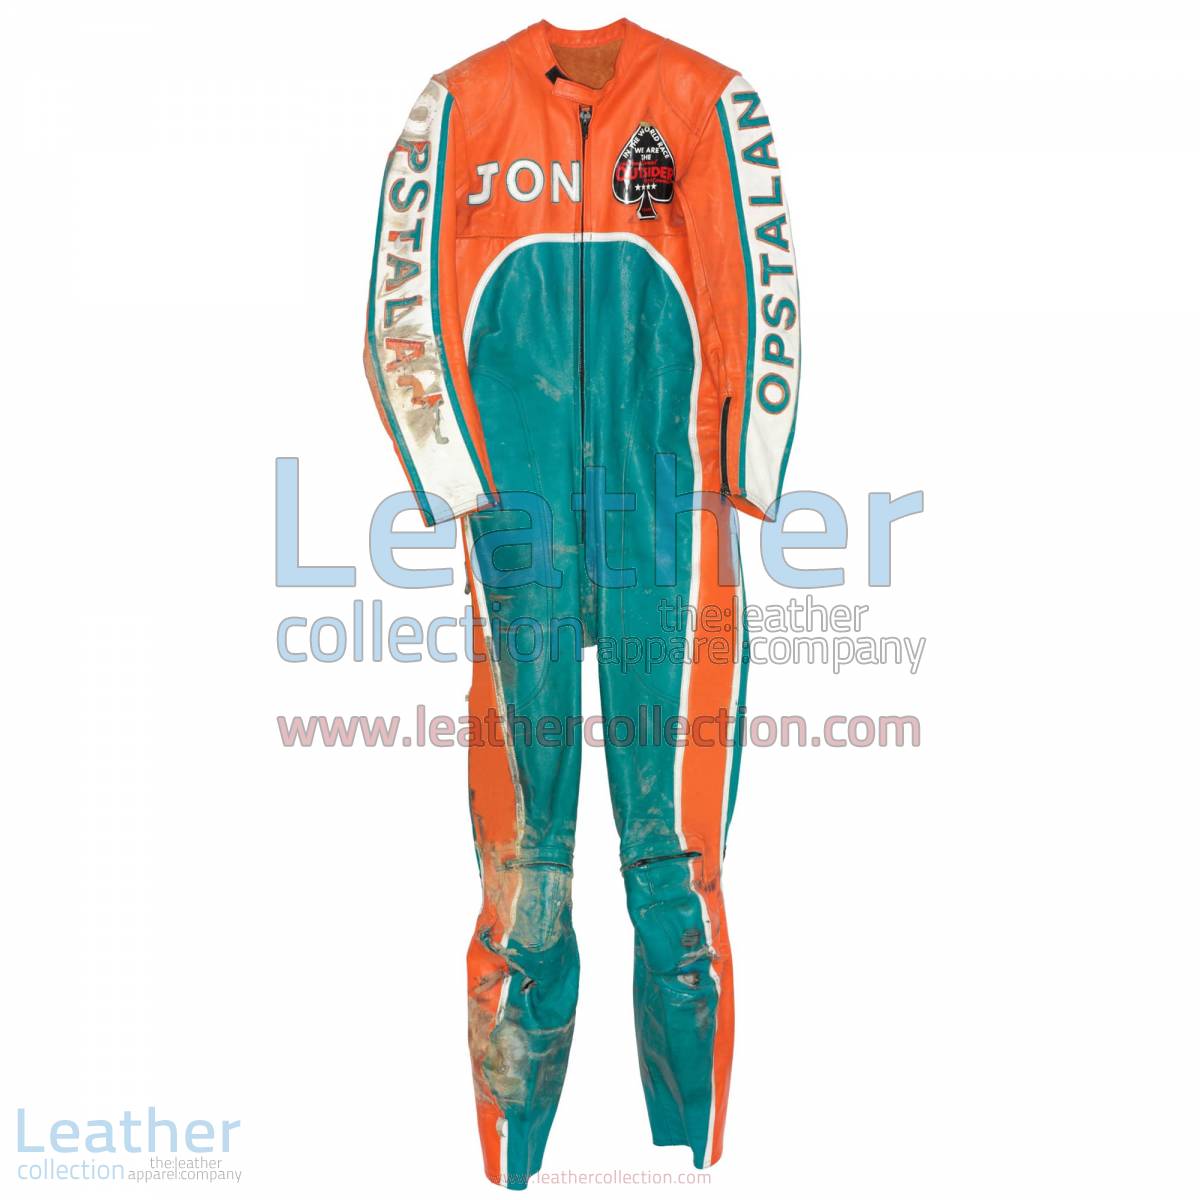 Jon Ekerold Yamaha GP 1980 Leathers | yamaha clothing,yamaha leathers